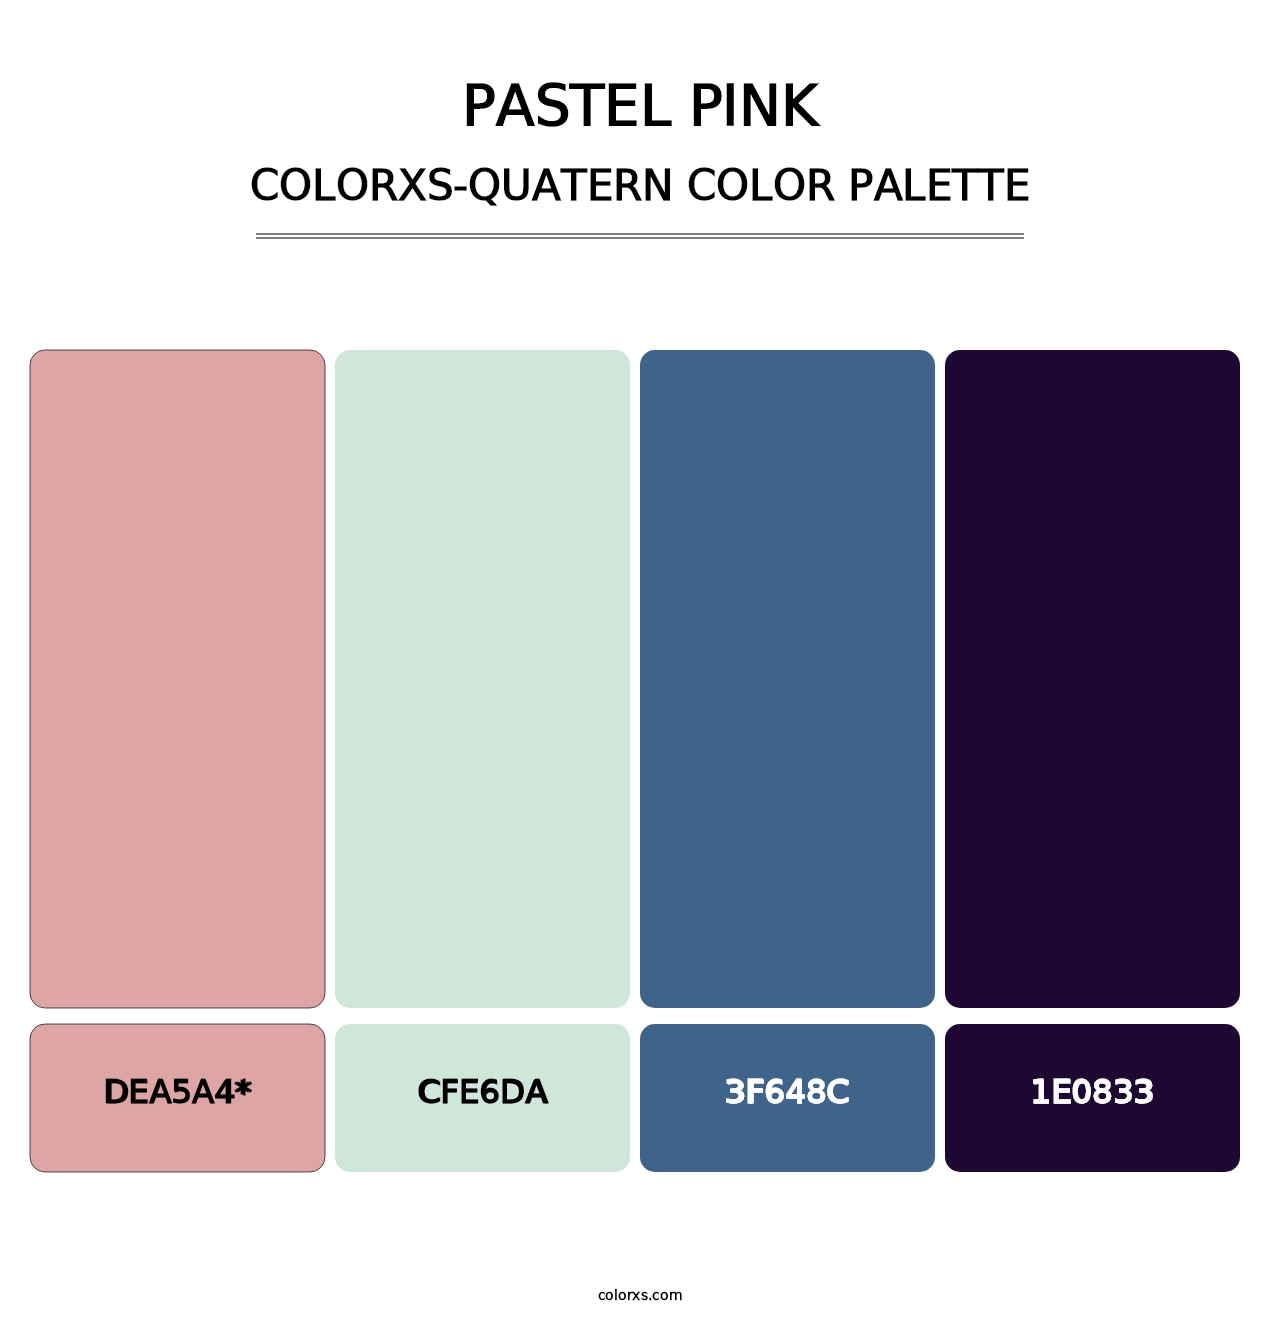 Pastel Pink - Colorxs Quatern Palette